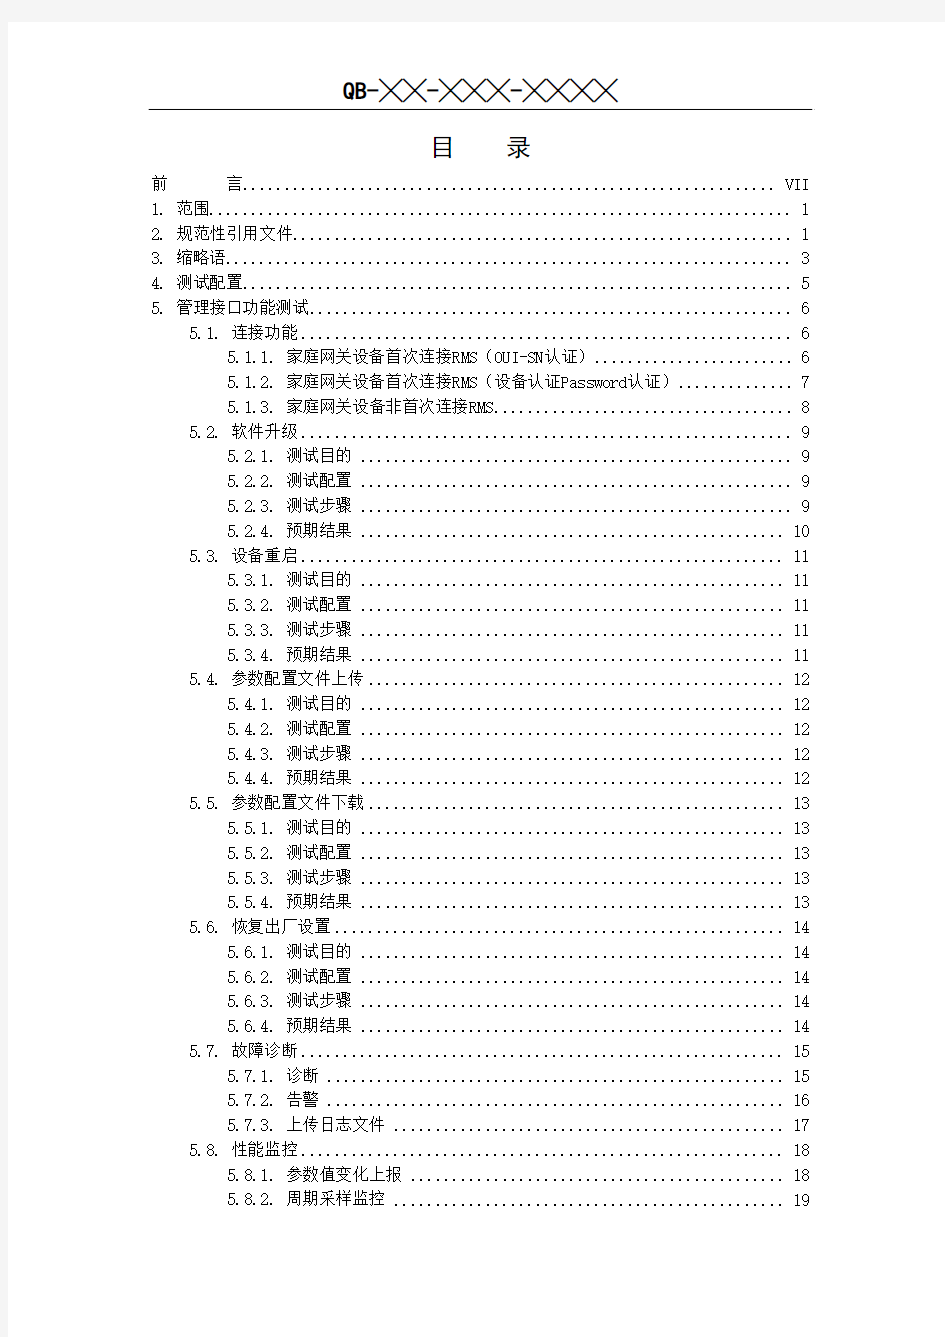 中国移动家庭网关设备测试规范- v3.2